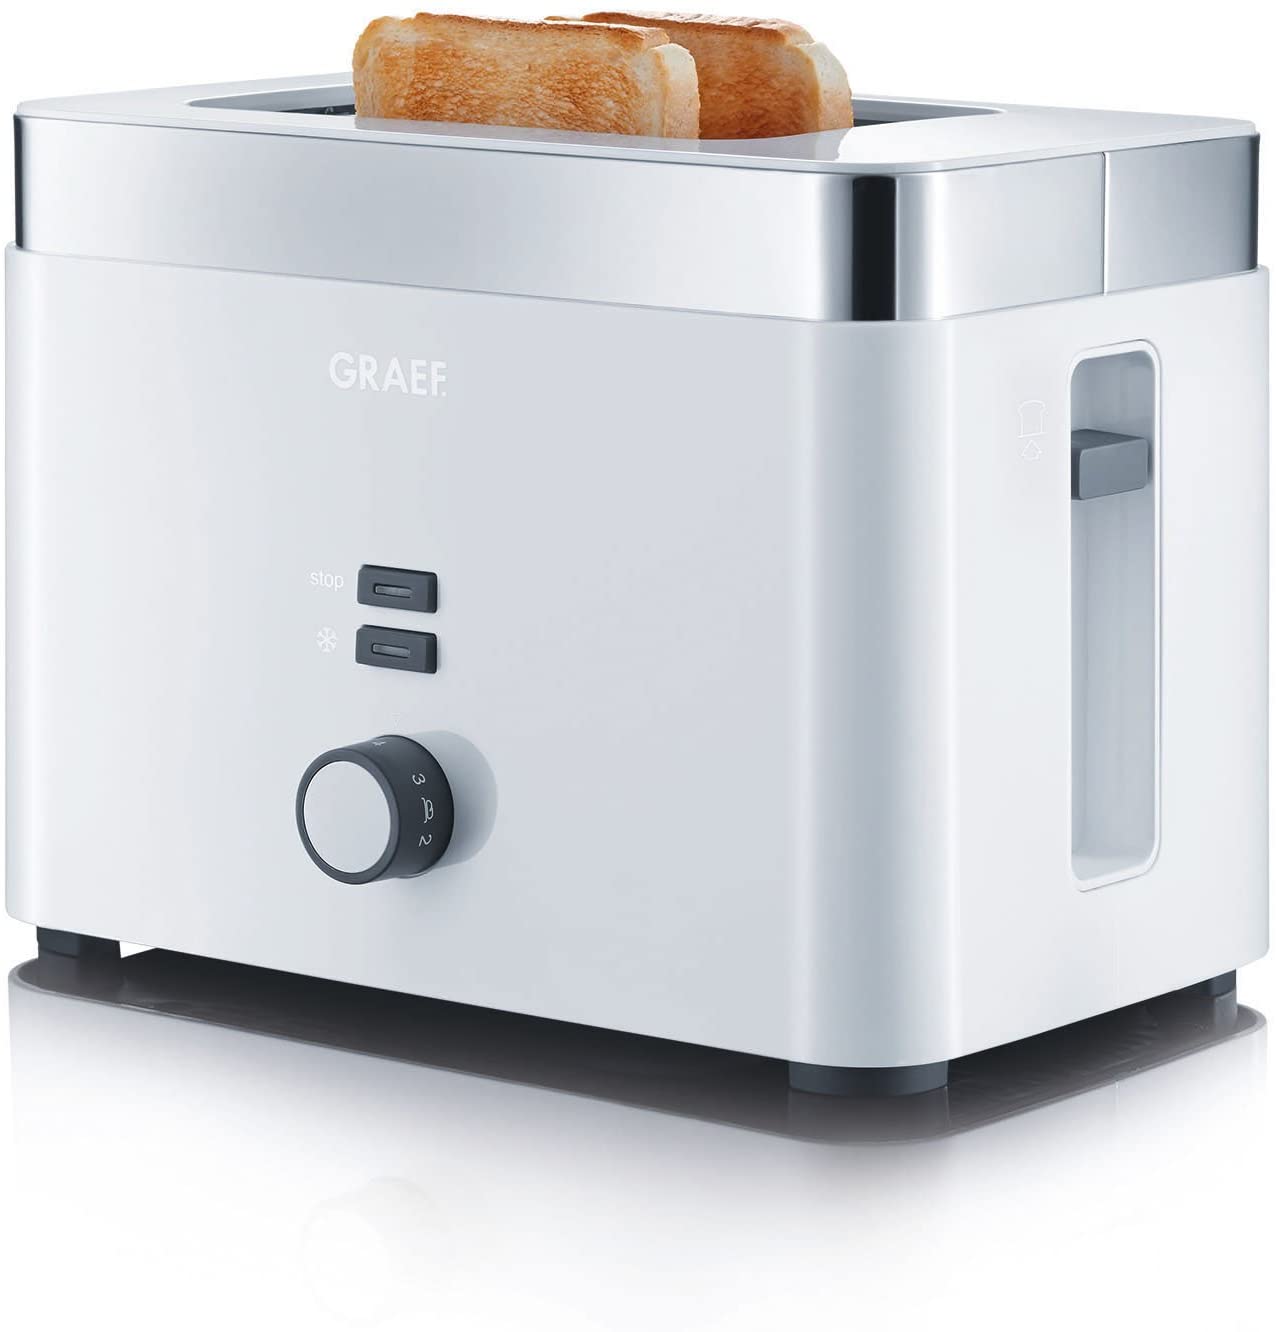 Graef 2 Slice Toaster White - TO61